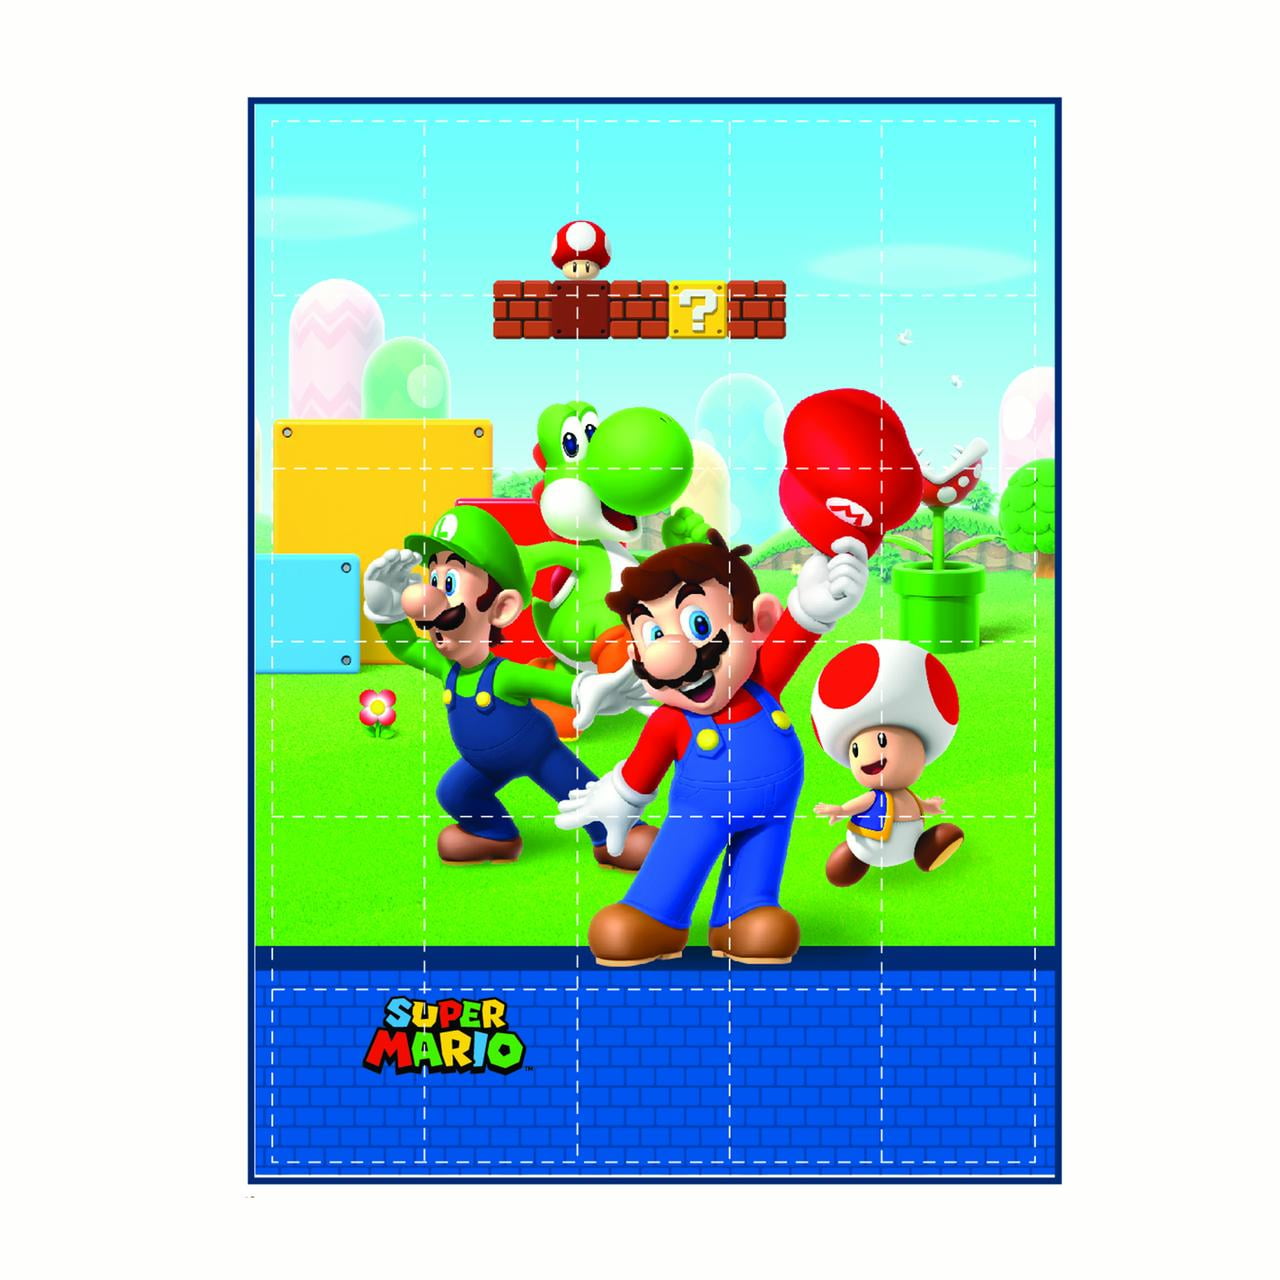 Super Mario Kids Weighted Blanket, Super Soft Plush Bedding, 36" x 48